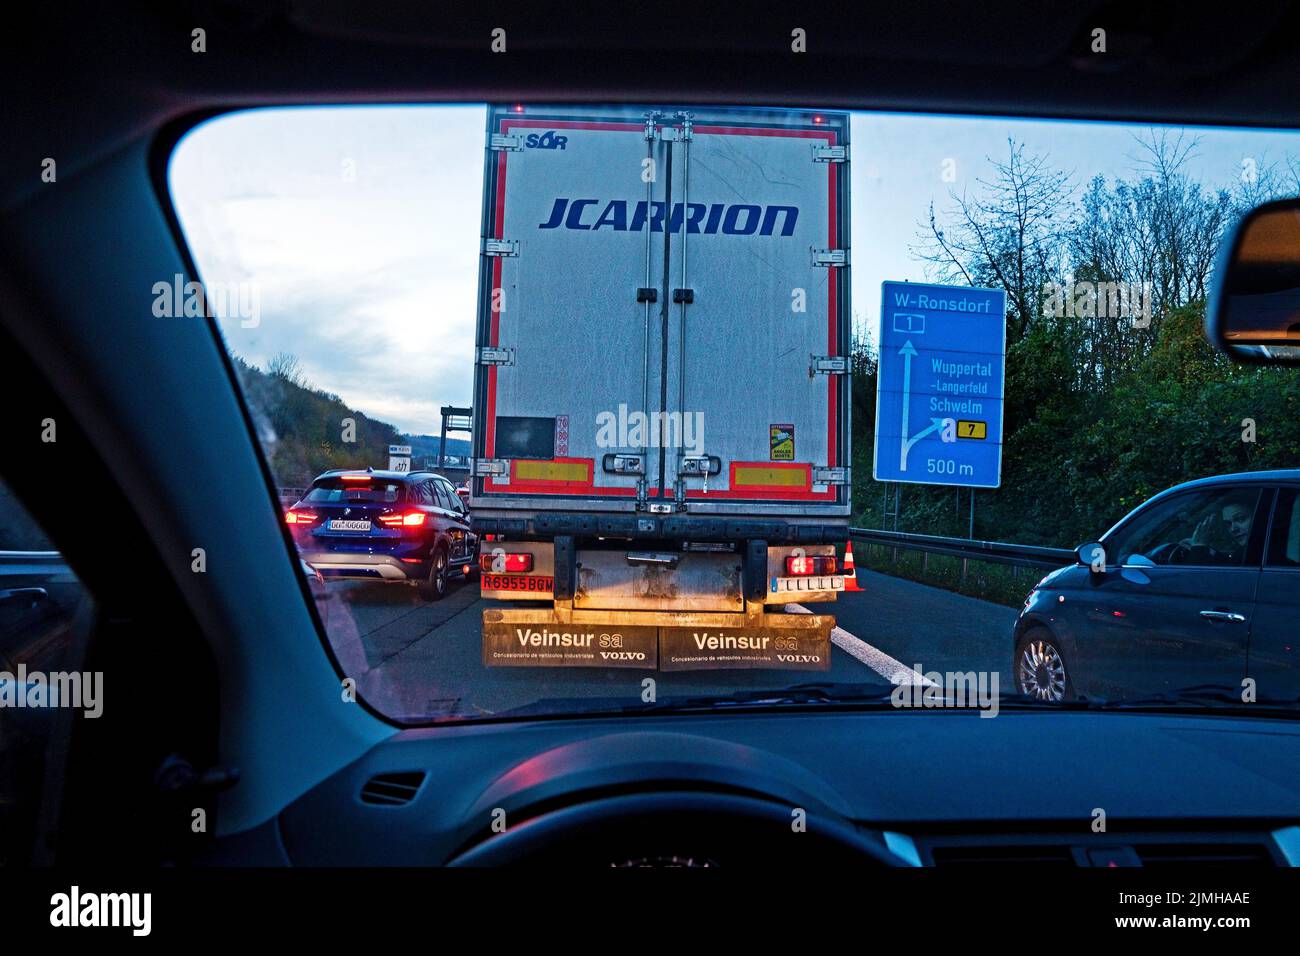 Vollsperrung auf der Autobahn A1, Blick aus dem Auto, Wuppertal, Nordrhein-Westfalen, Deutschland Stockfoto